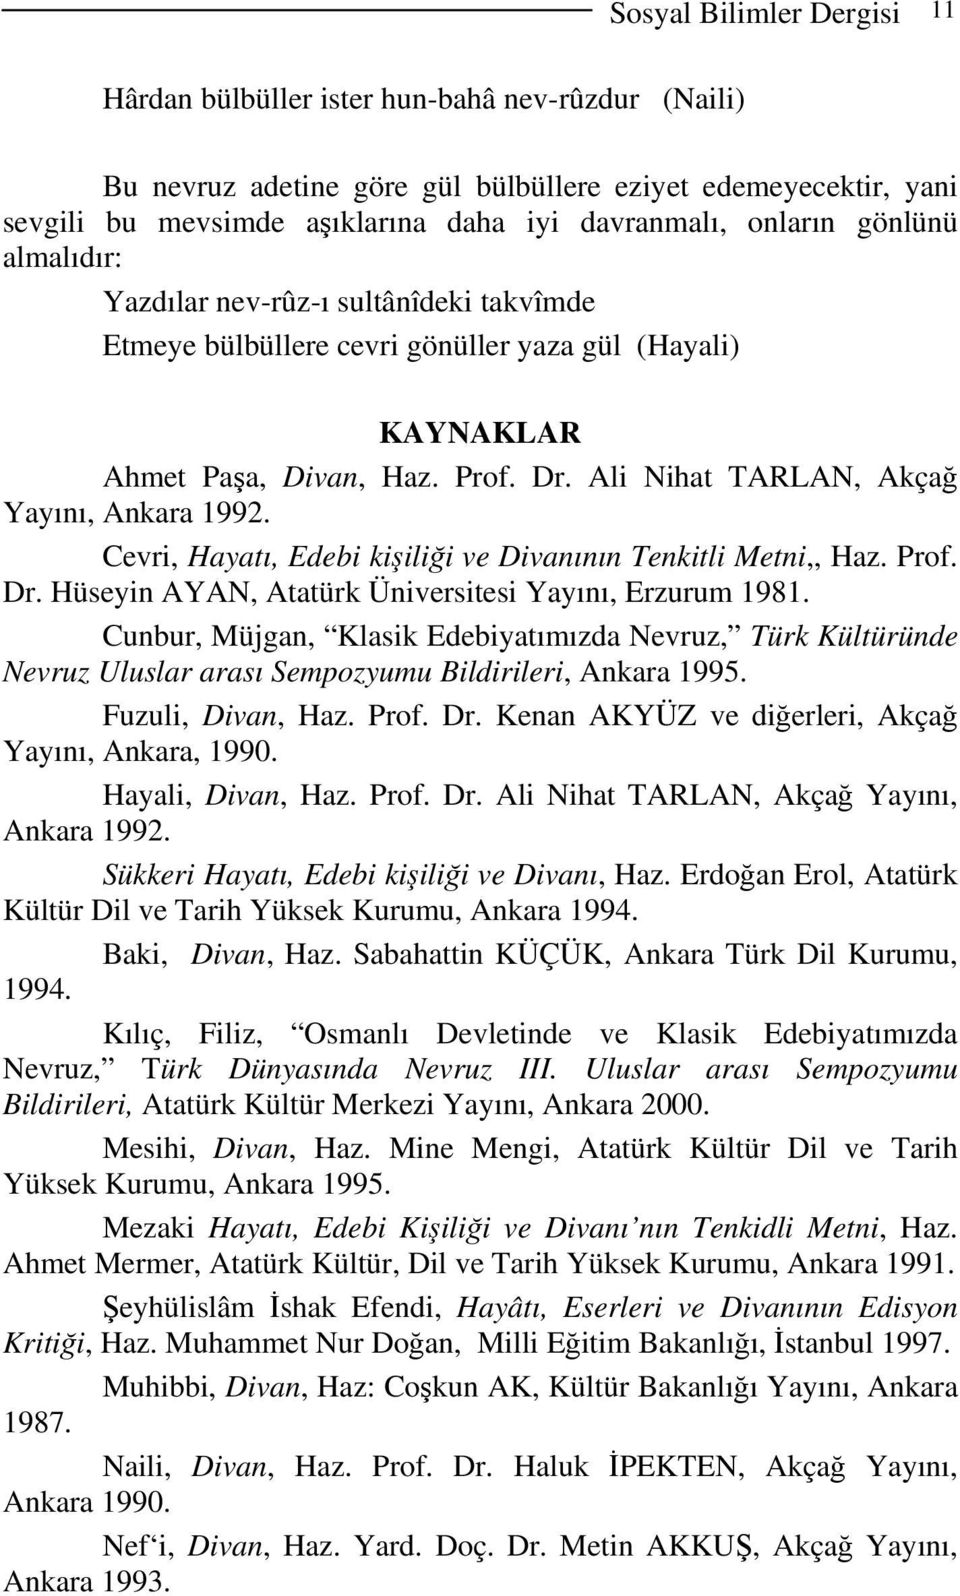 Ali Nihat TARLAN, Akçağ Yayını, Ankara 1992. Cevri, Hayatı, Edebi kişiliği ve Divanının Tenkitli Metni,, Haz. Prof. Dr. Hüseyin AYAN, Atatürk Üniversitesi Yayını, Erzurum 1981.